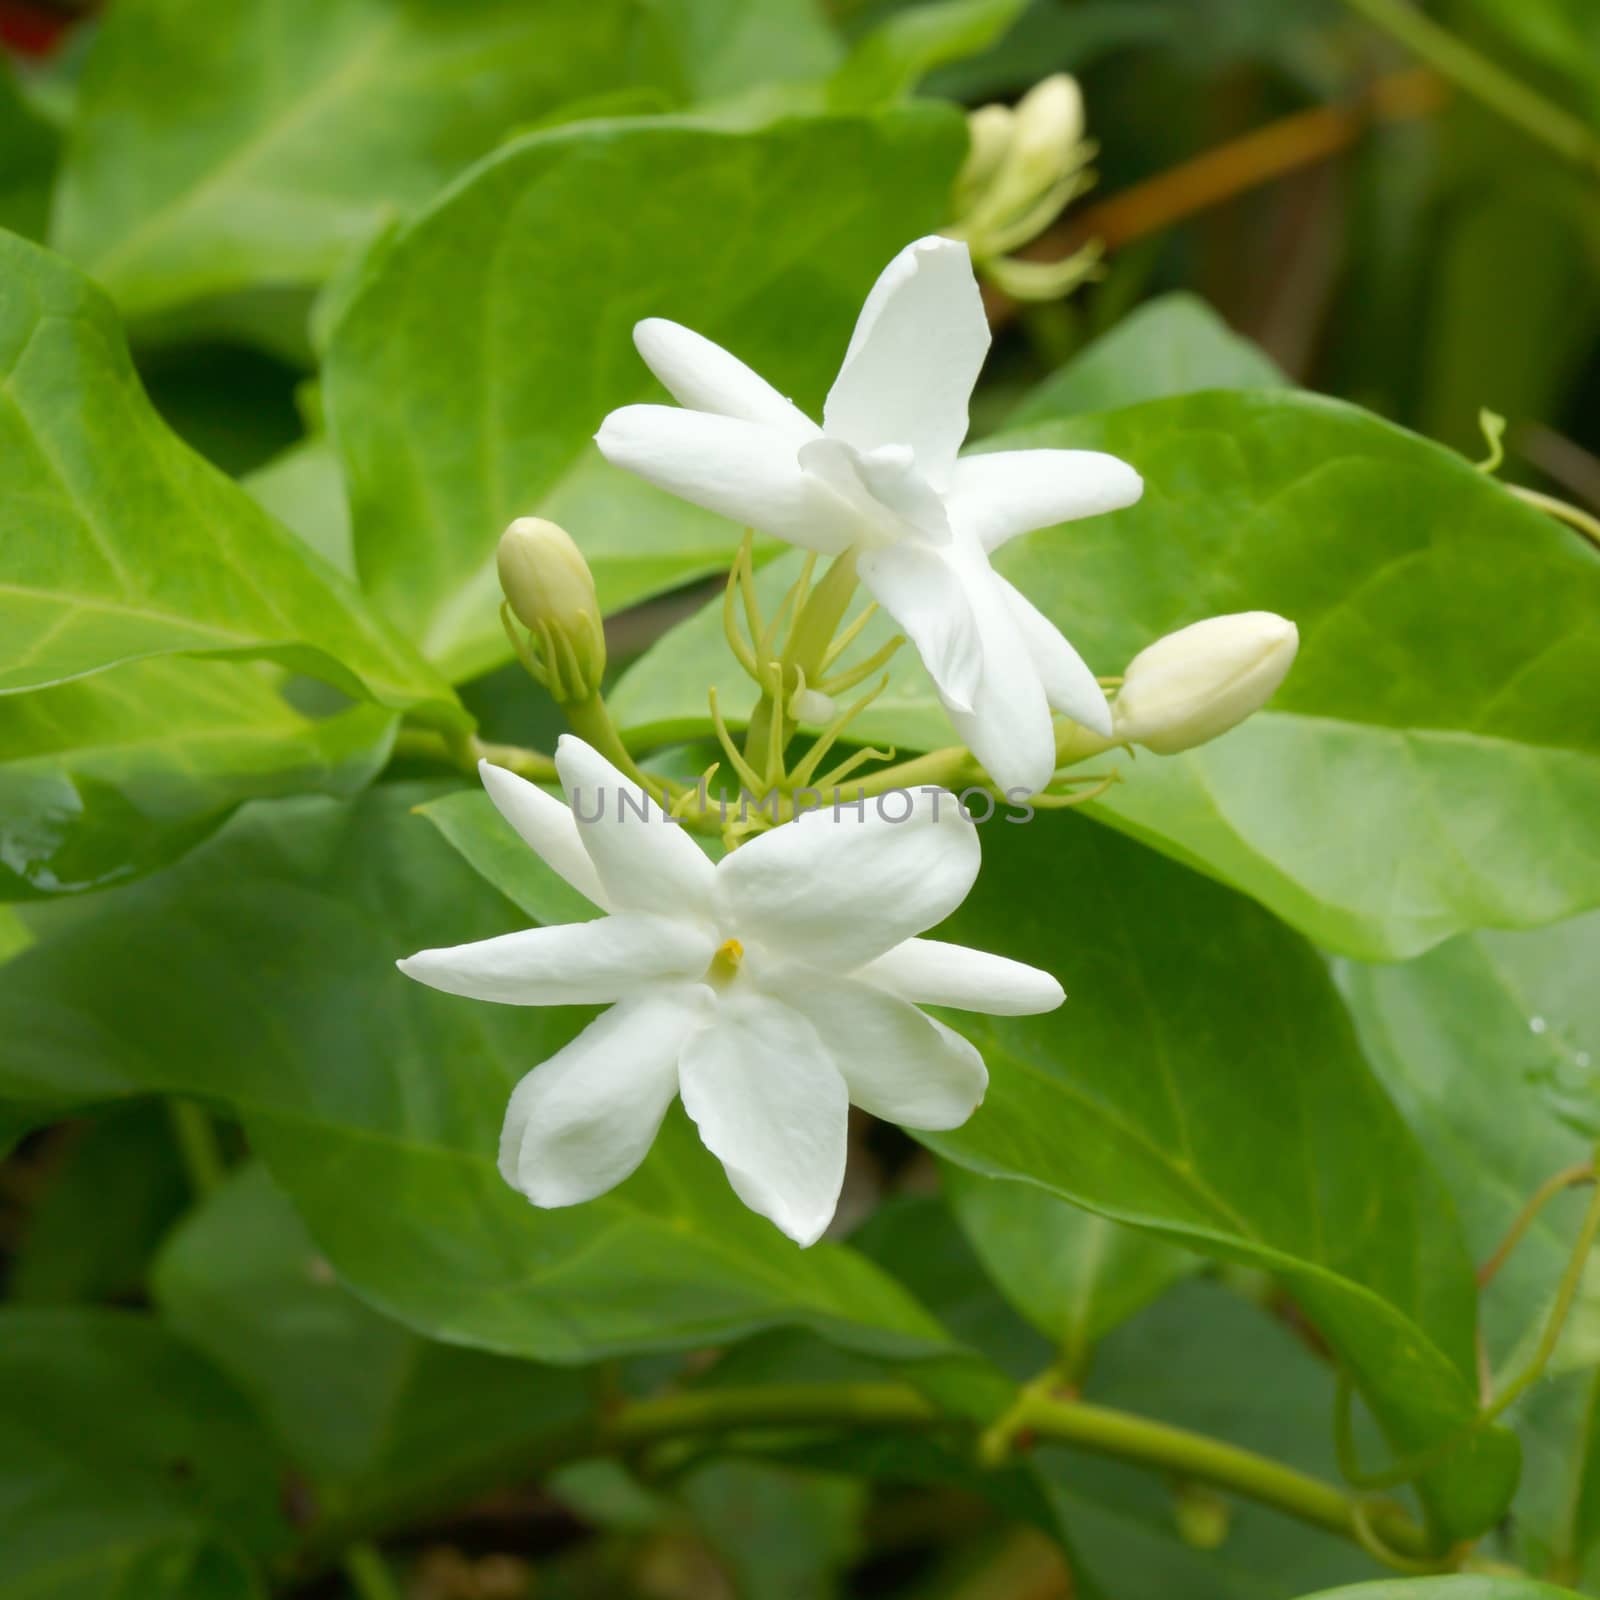 White Jasmine Flower (Jasminum) by Noppharat_th